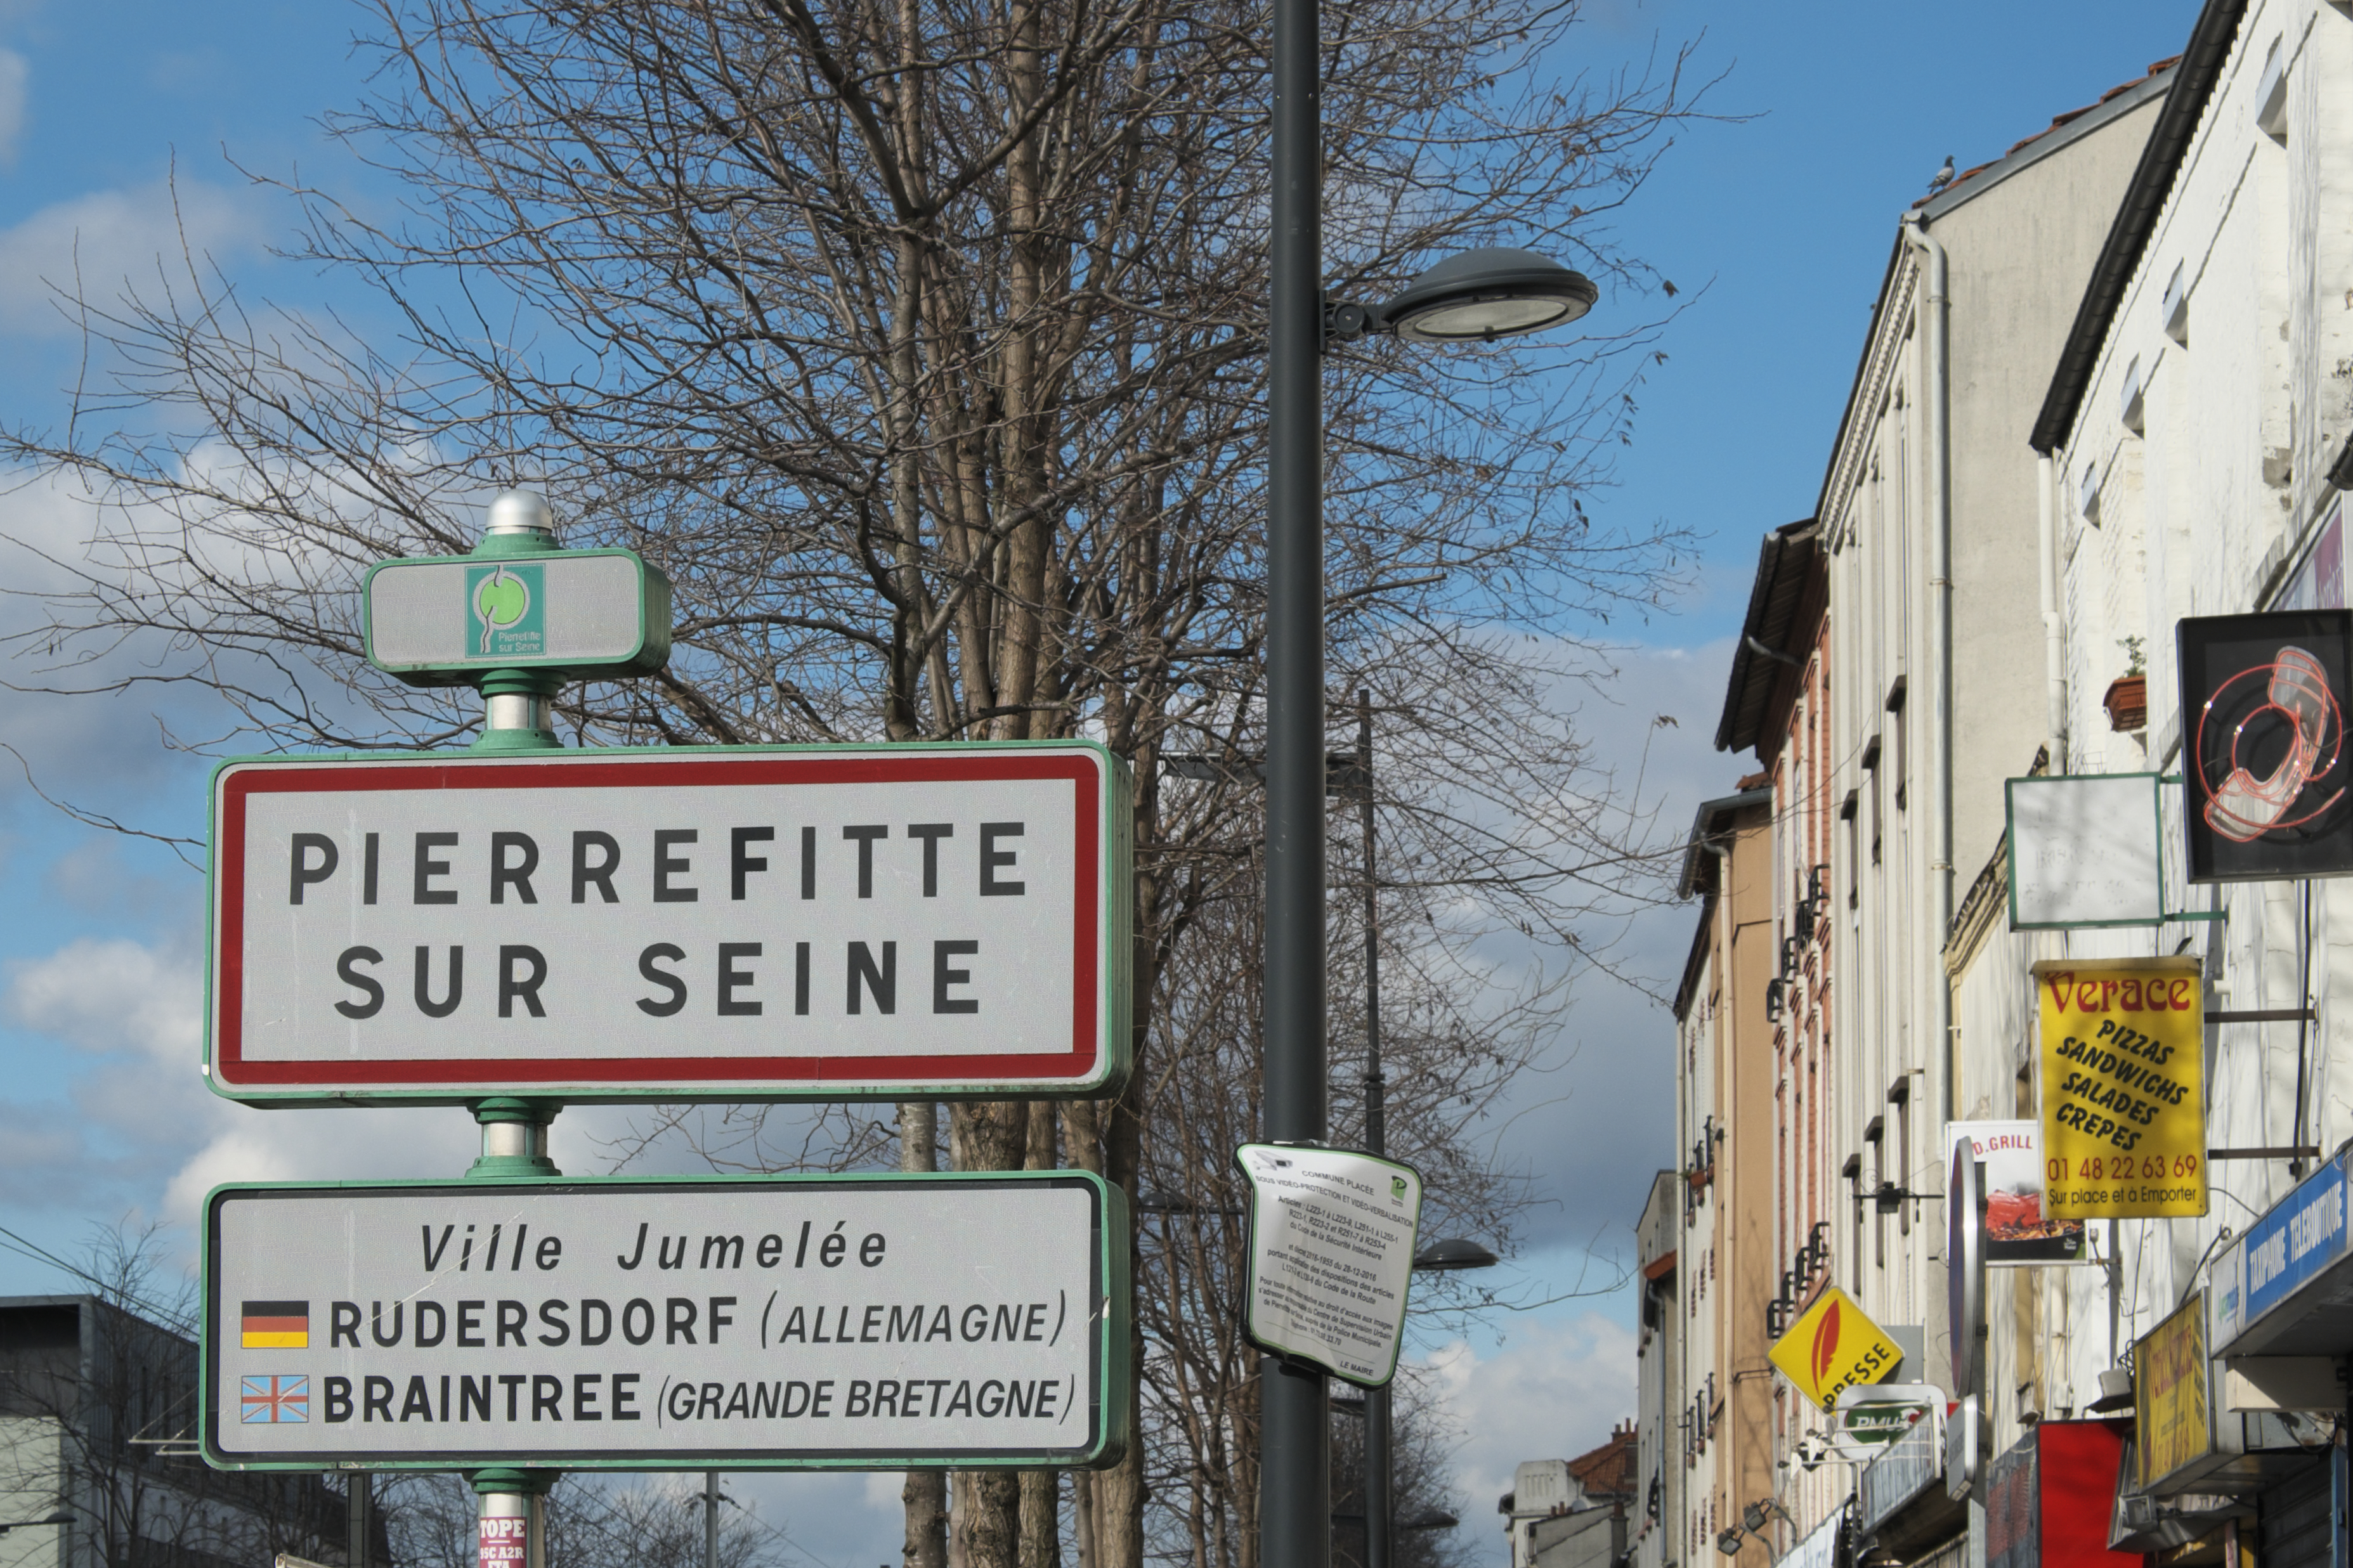  Pierrefitte-sur-Seine, France hookers